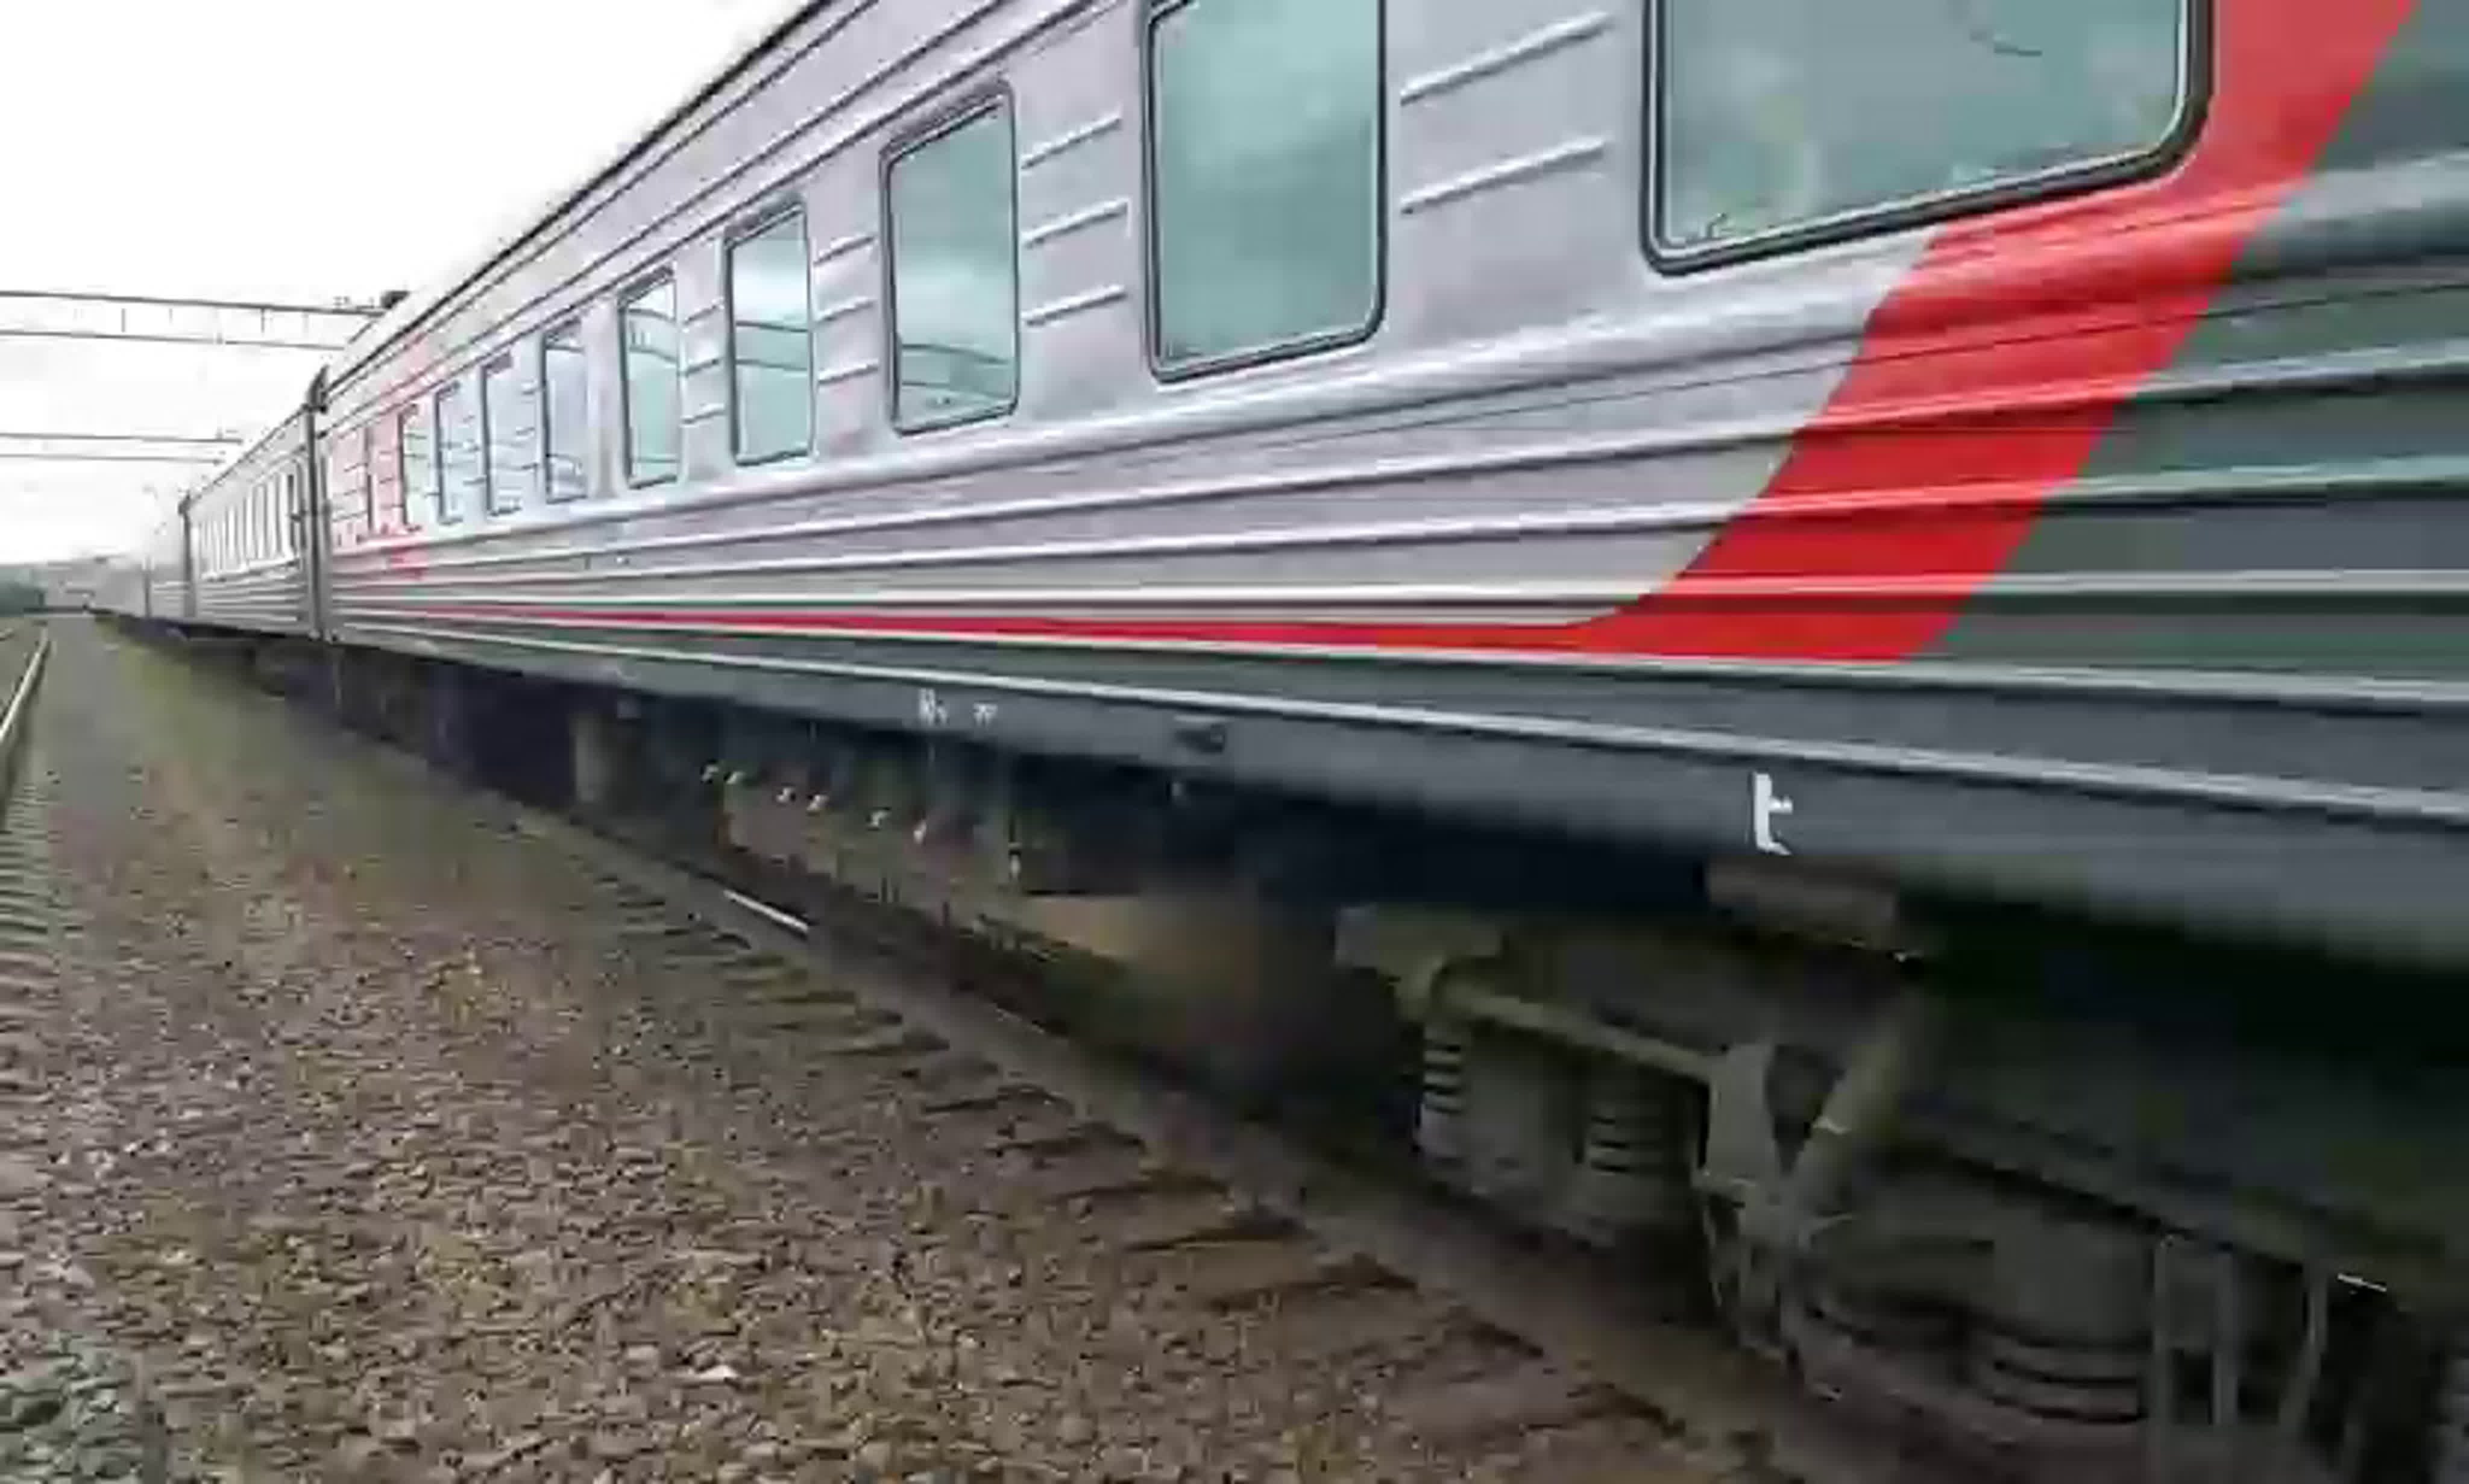 Поезд 027а санкт петербург москва сидячие места фото